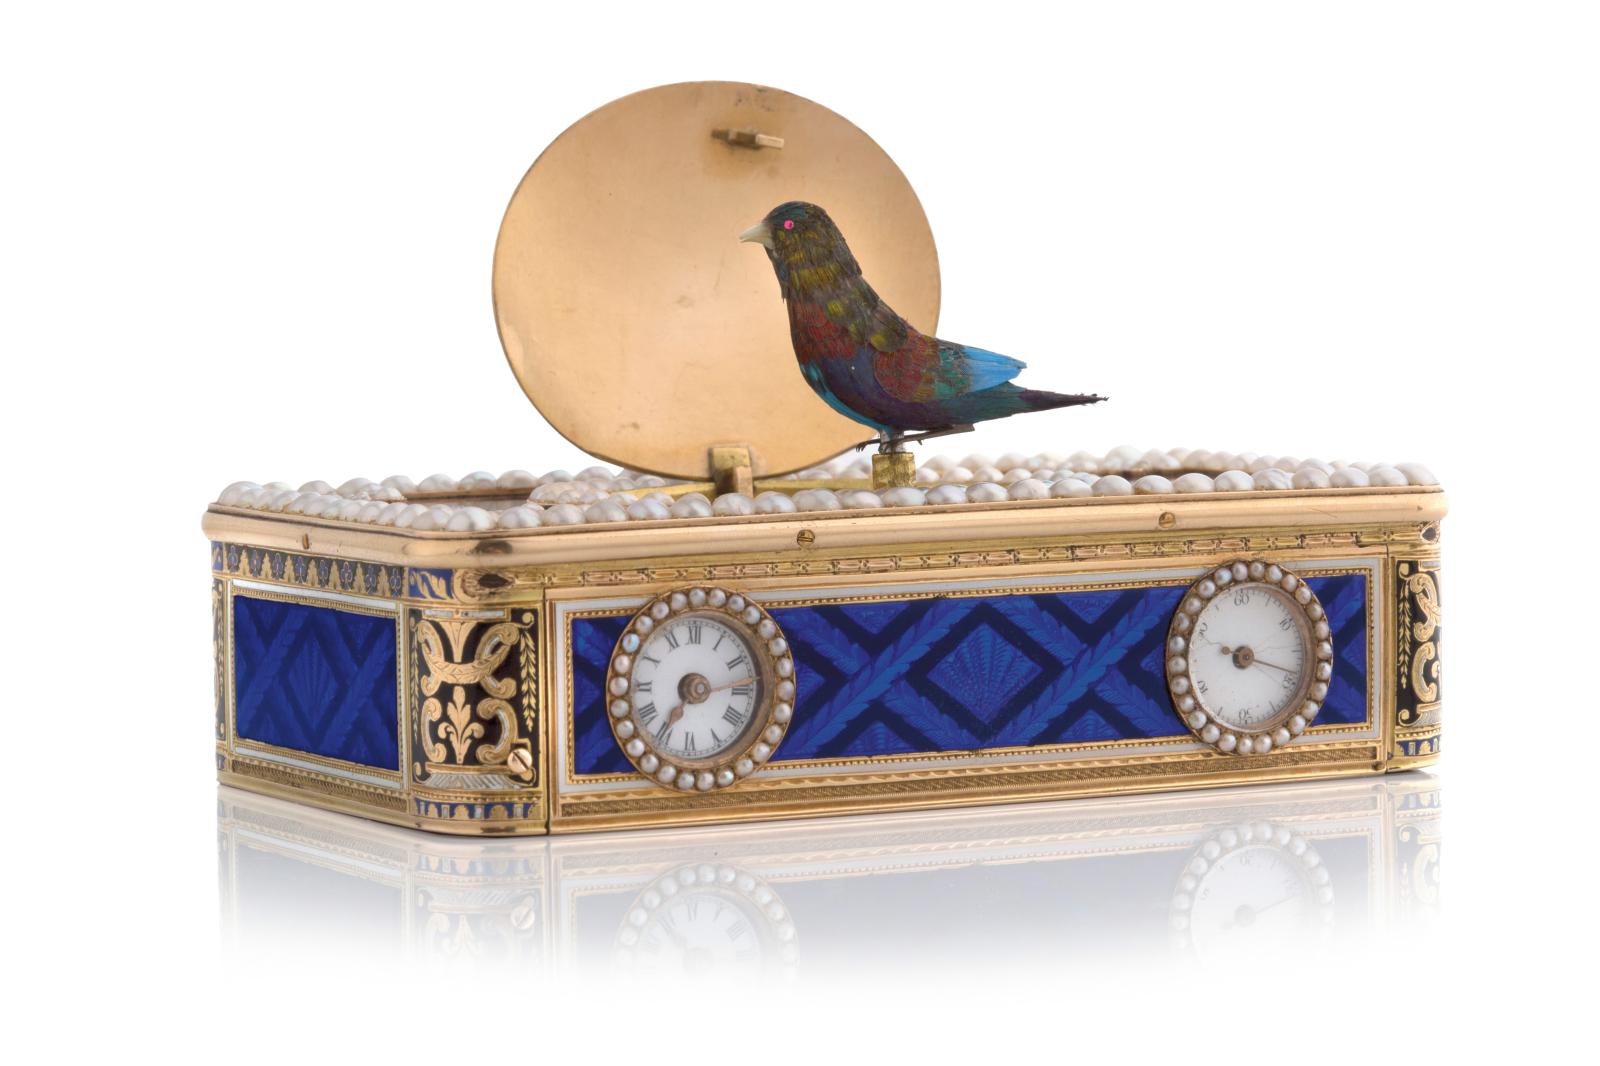 Travail suisse attribué aux Frères Rochat, poinçon de Jean-Georges Rémond, début du XIXe siècle, boîte-montre à oiseau chanteur en or, éma